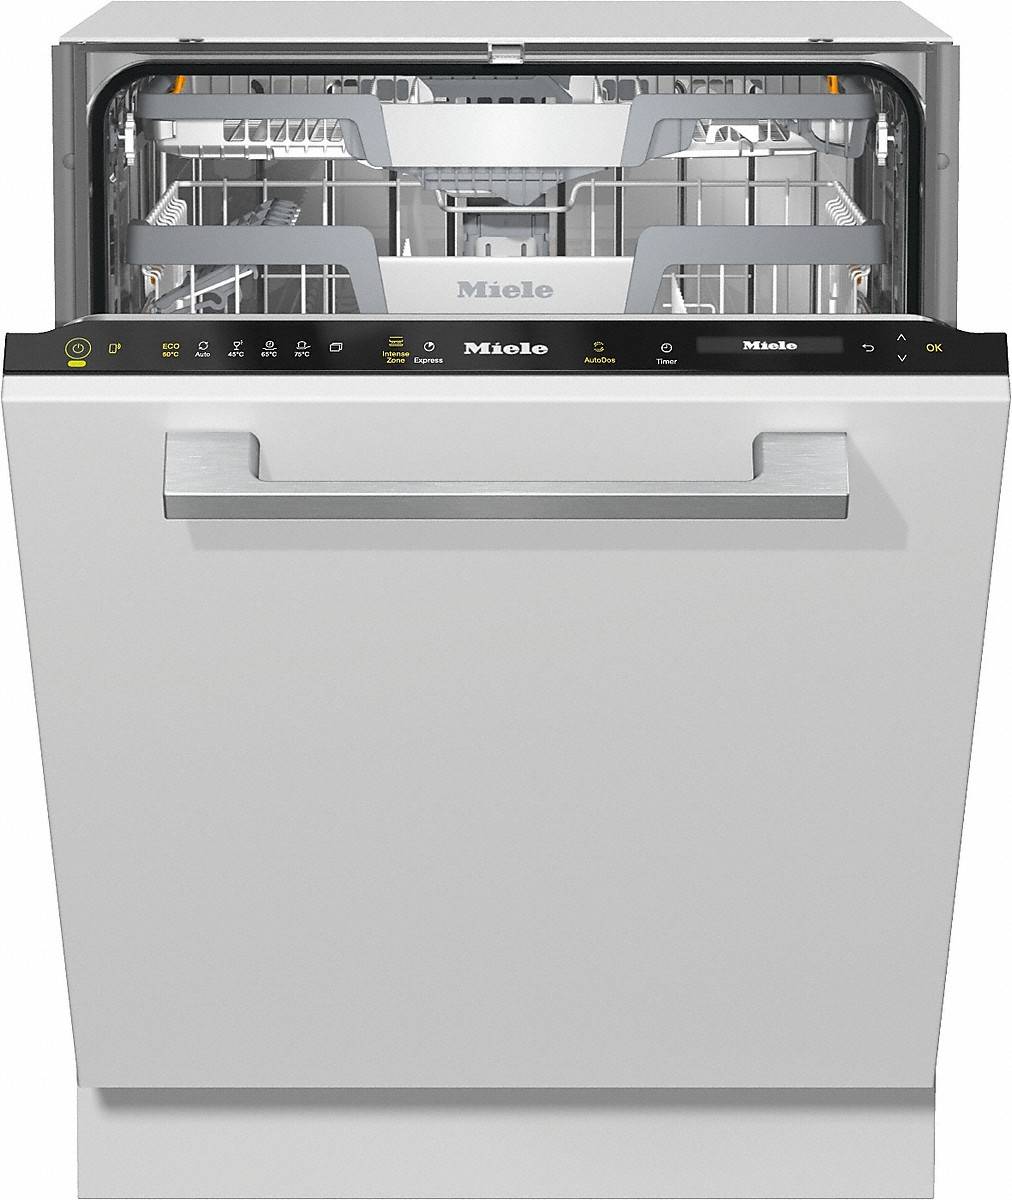 Посудомоечная машина с открытой панелью – универсальная модель для каждой семьи